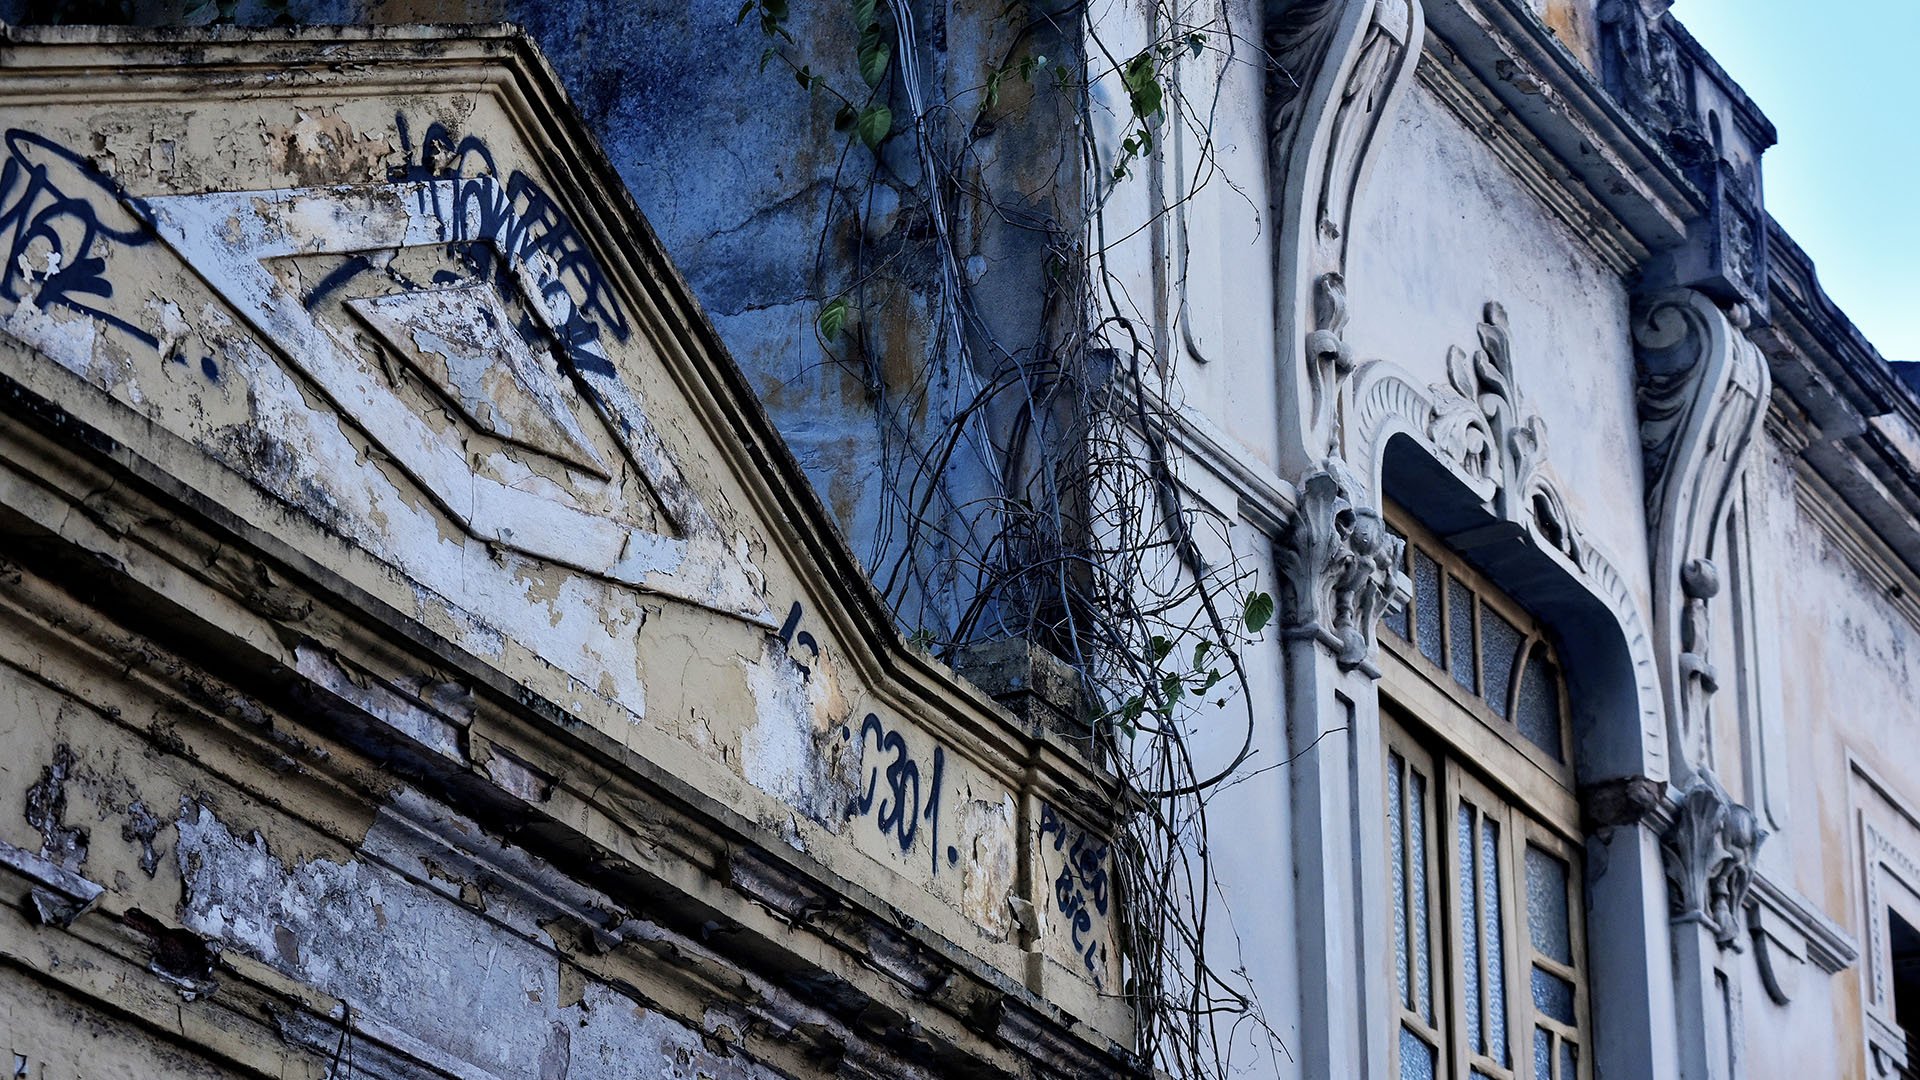 História Abandonada - Ensaio fotográfico com foco nos detalhes da arquitetura de época, ação do tempo e o descaso com alguns prédios no Centro Histórico de Vitória